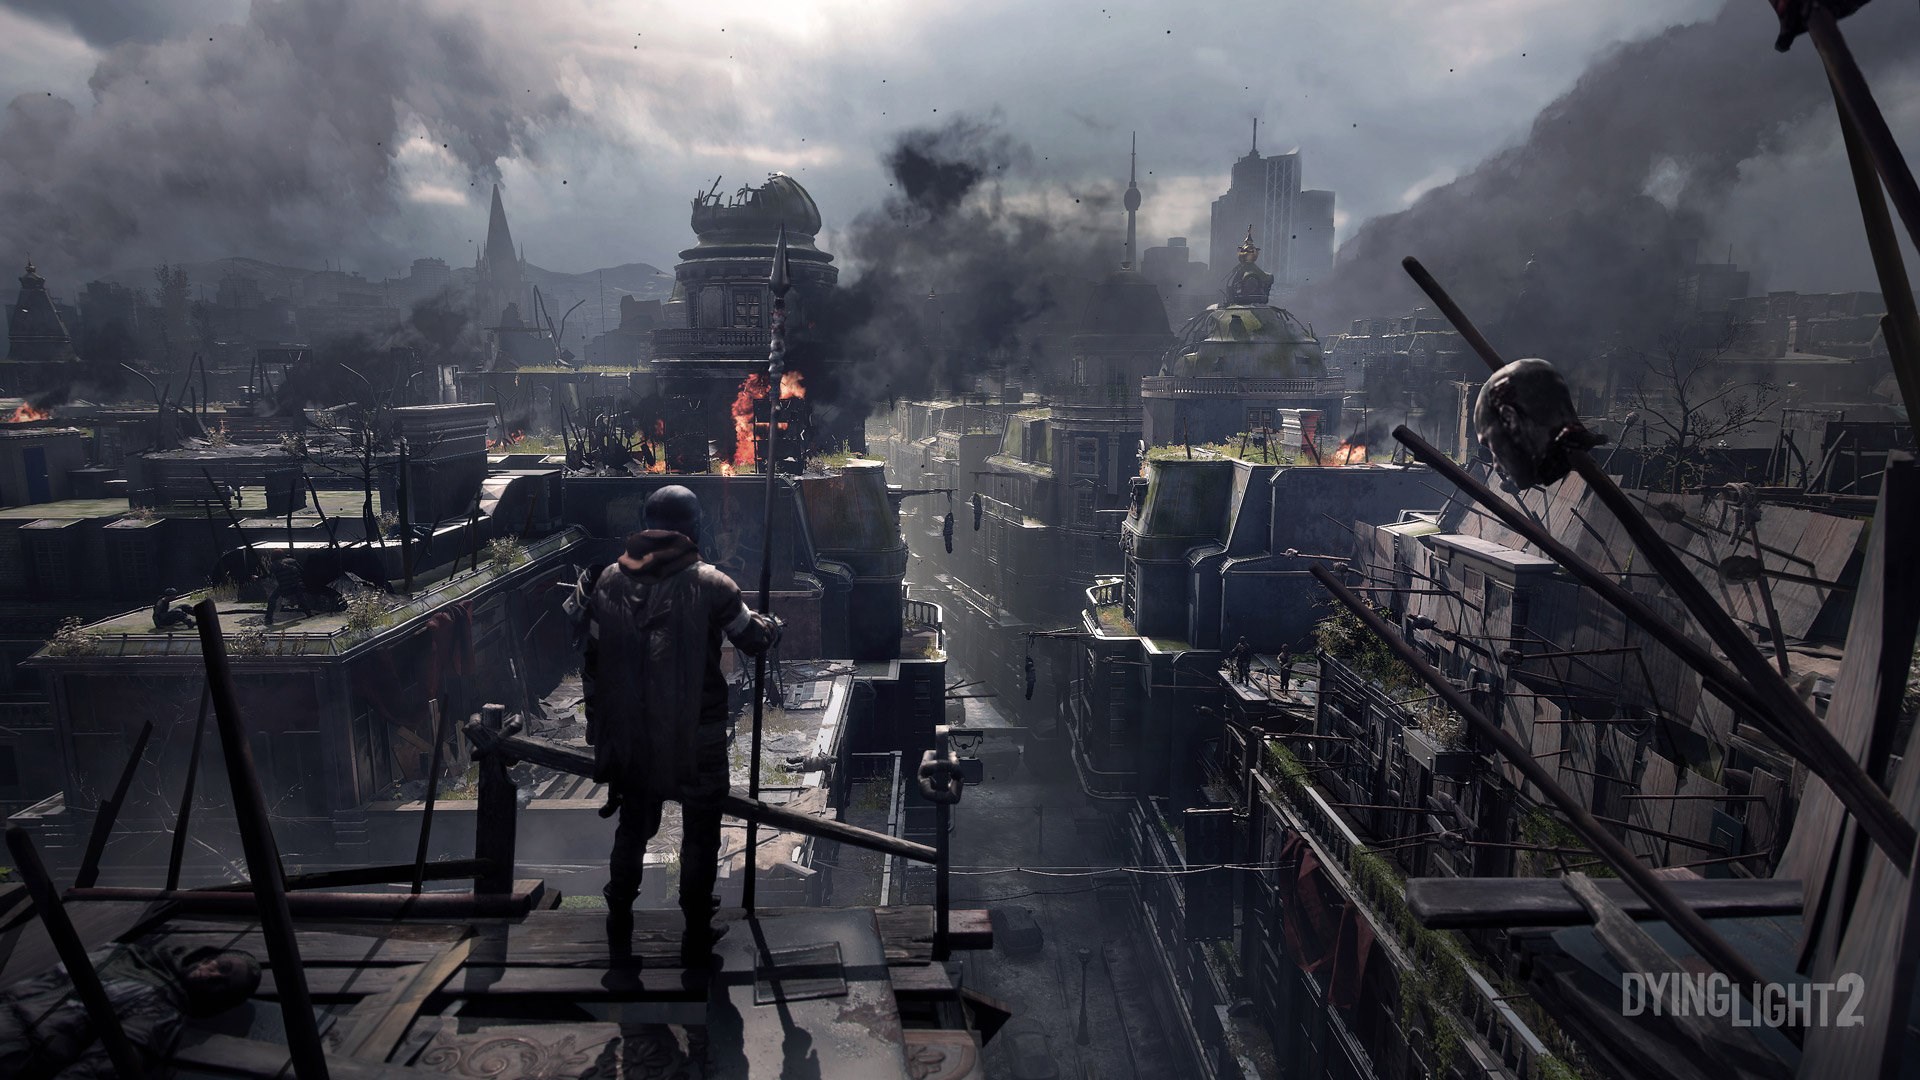 Dying Light 2'nin haritası ilk oyundan 4 kat daha büyük olacak